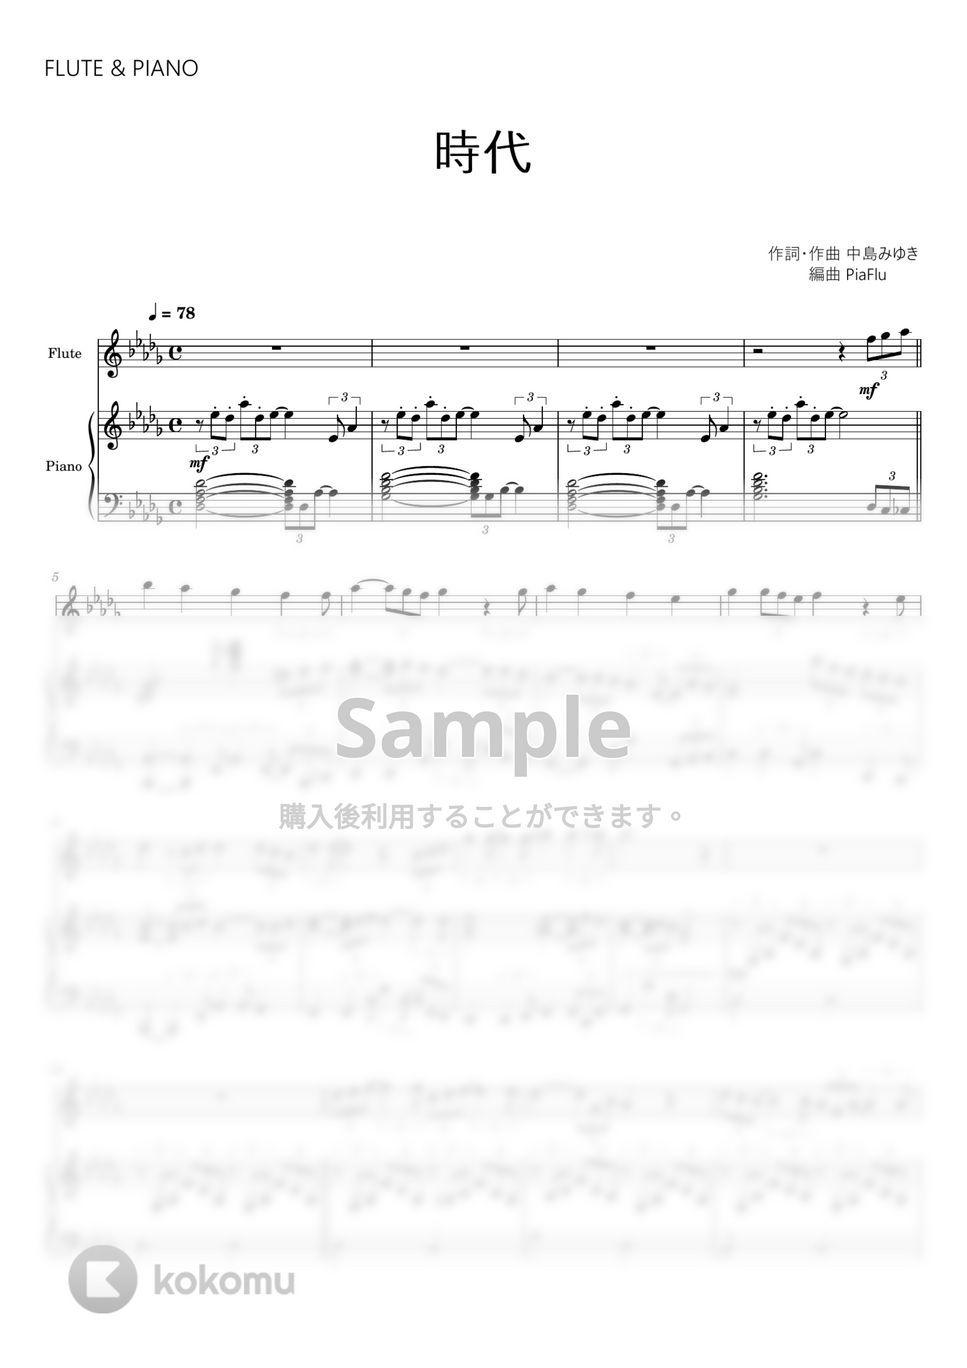 中島みゆき - 時代 (フルート&ピアノ伴奏) by PiaFlu